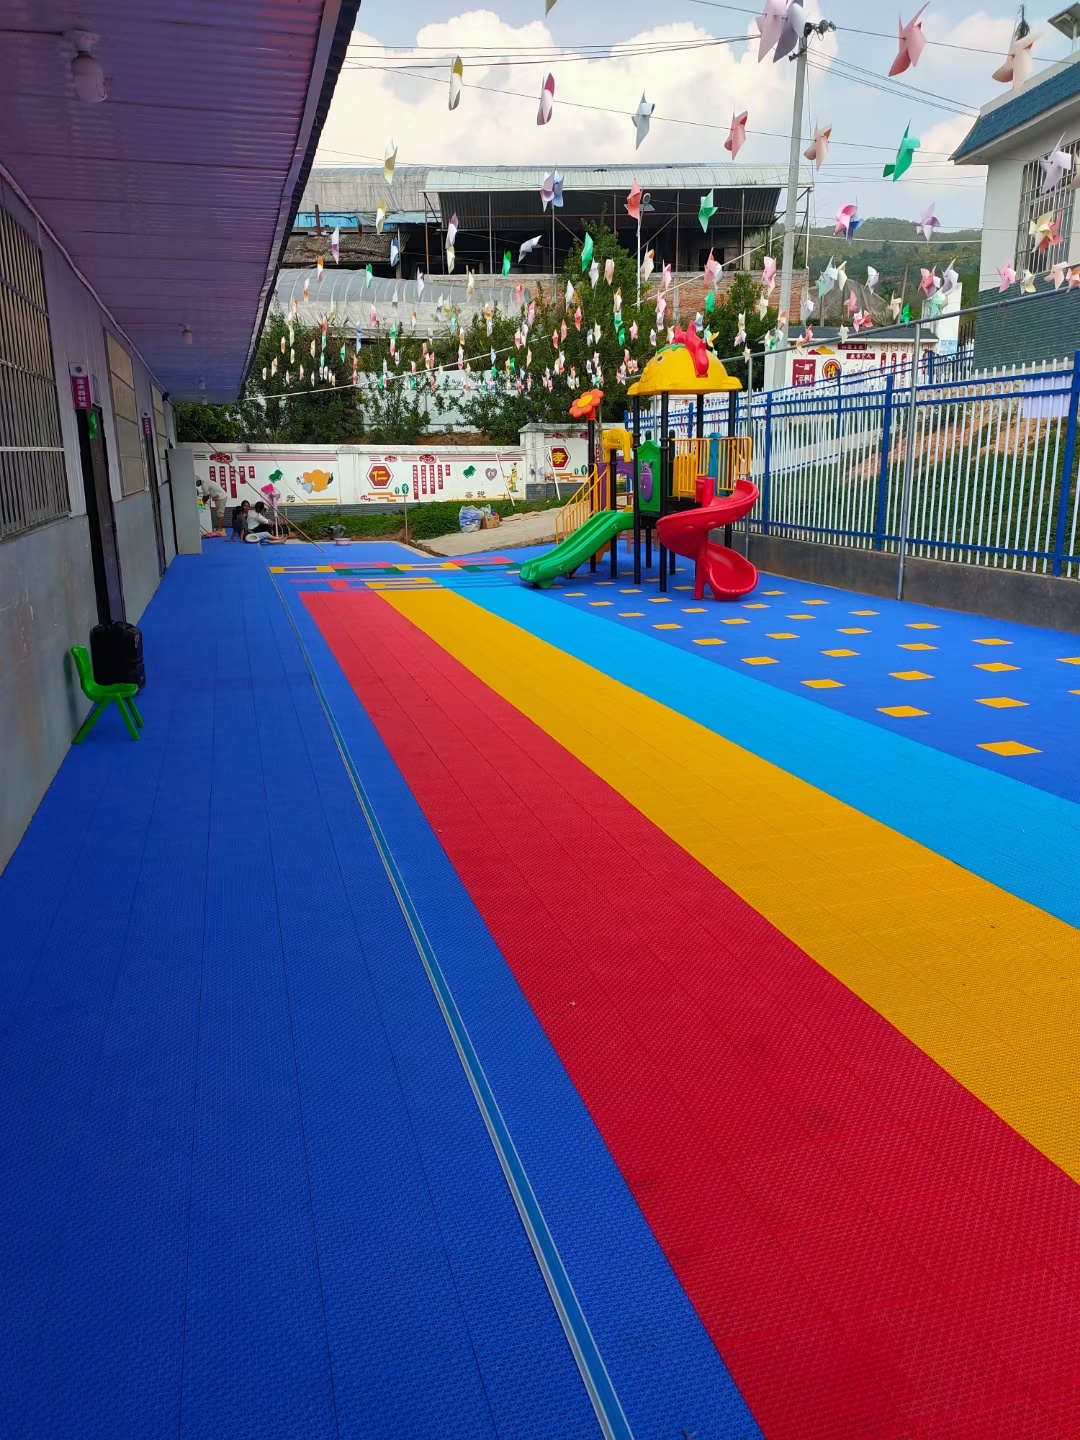 曼纳奇悬浮地板塑胶-幼儿园悬浮地板 游乐场悬浮地板 悬浮地板厂家 篮球场悬浮地板 悬浮地板施工 昆明悬浮地板厂家示例图22